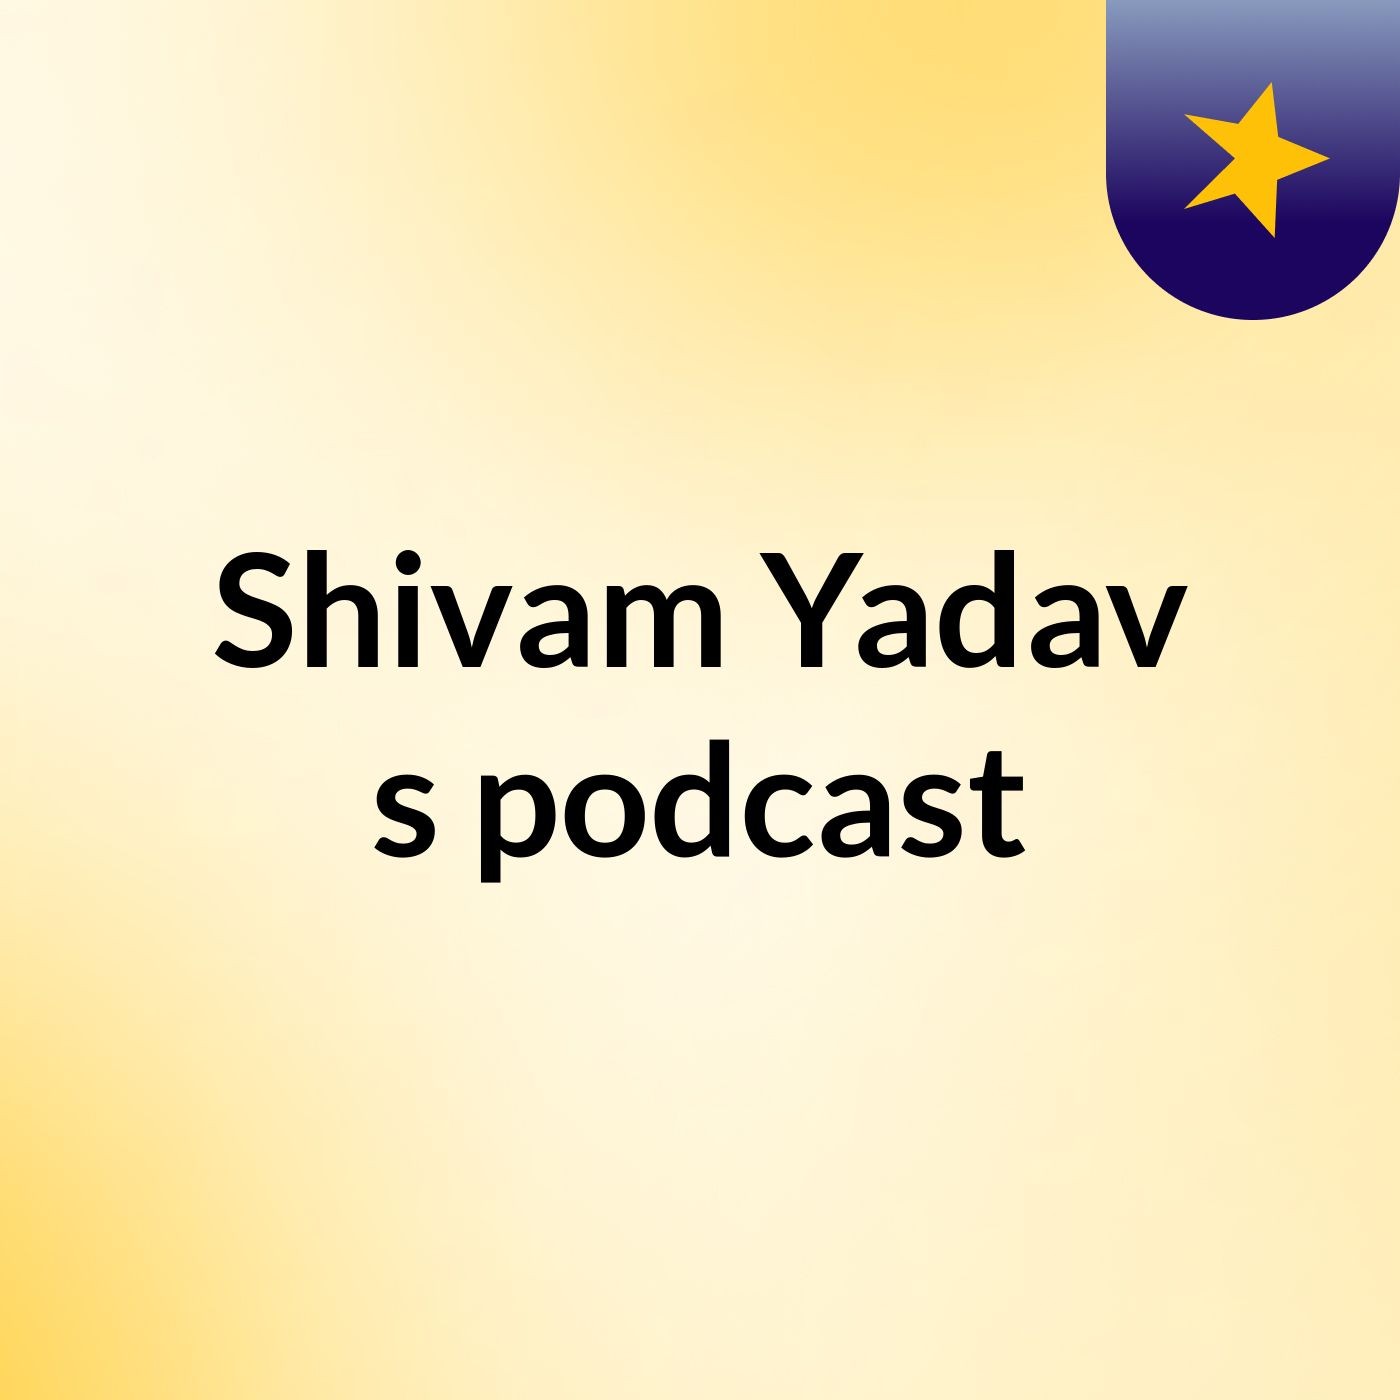 Episode 13 - Shivam Yadav's podcast